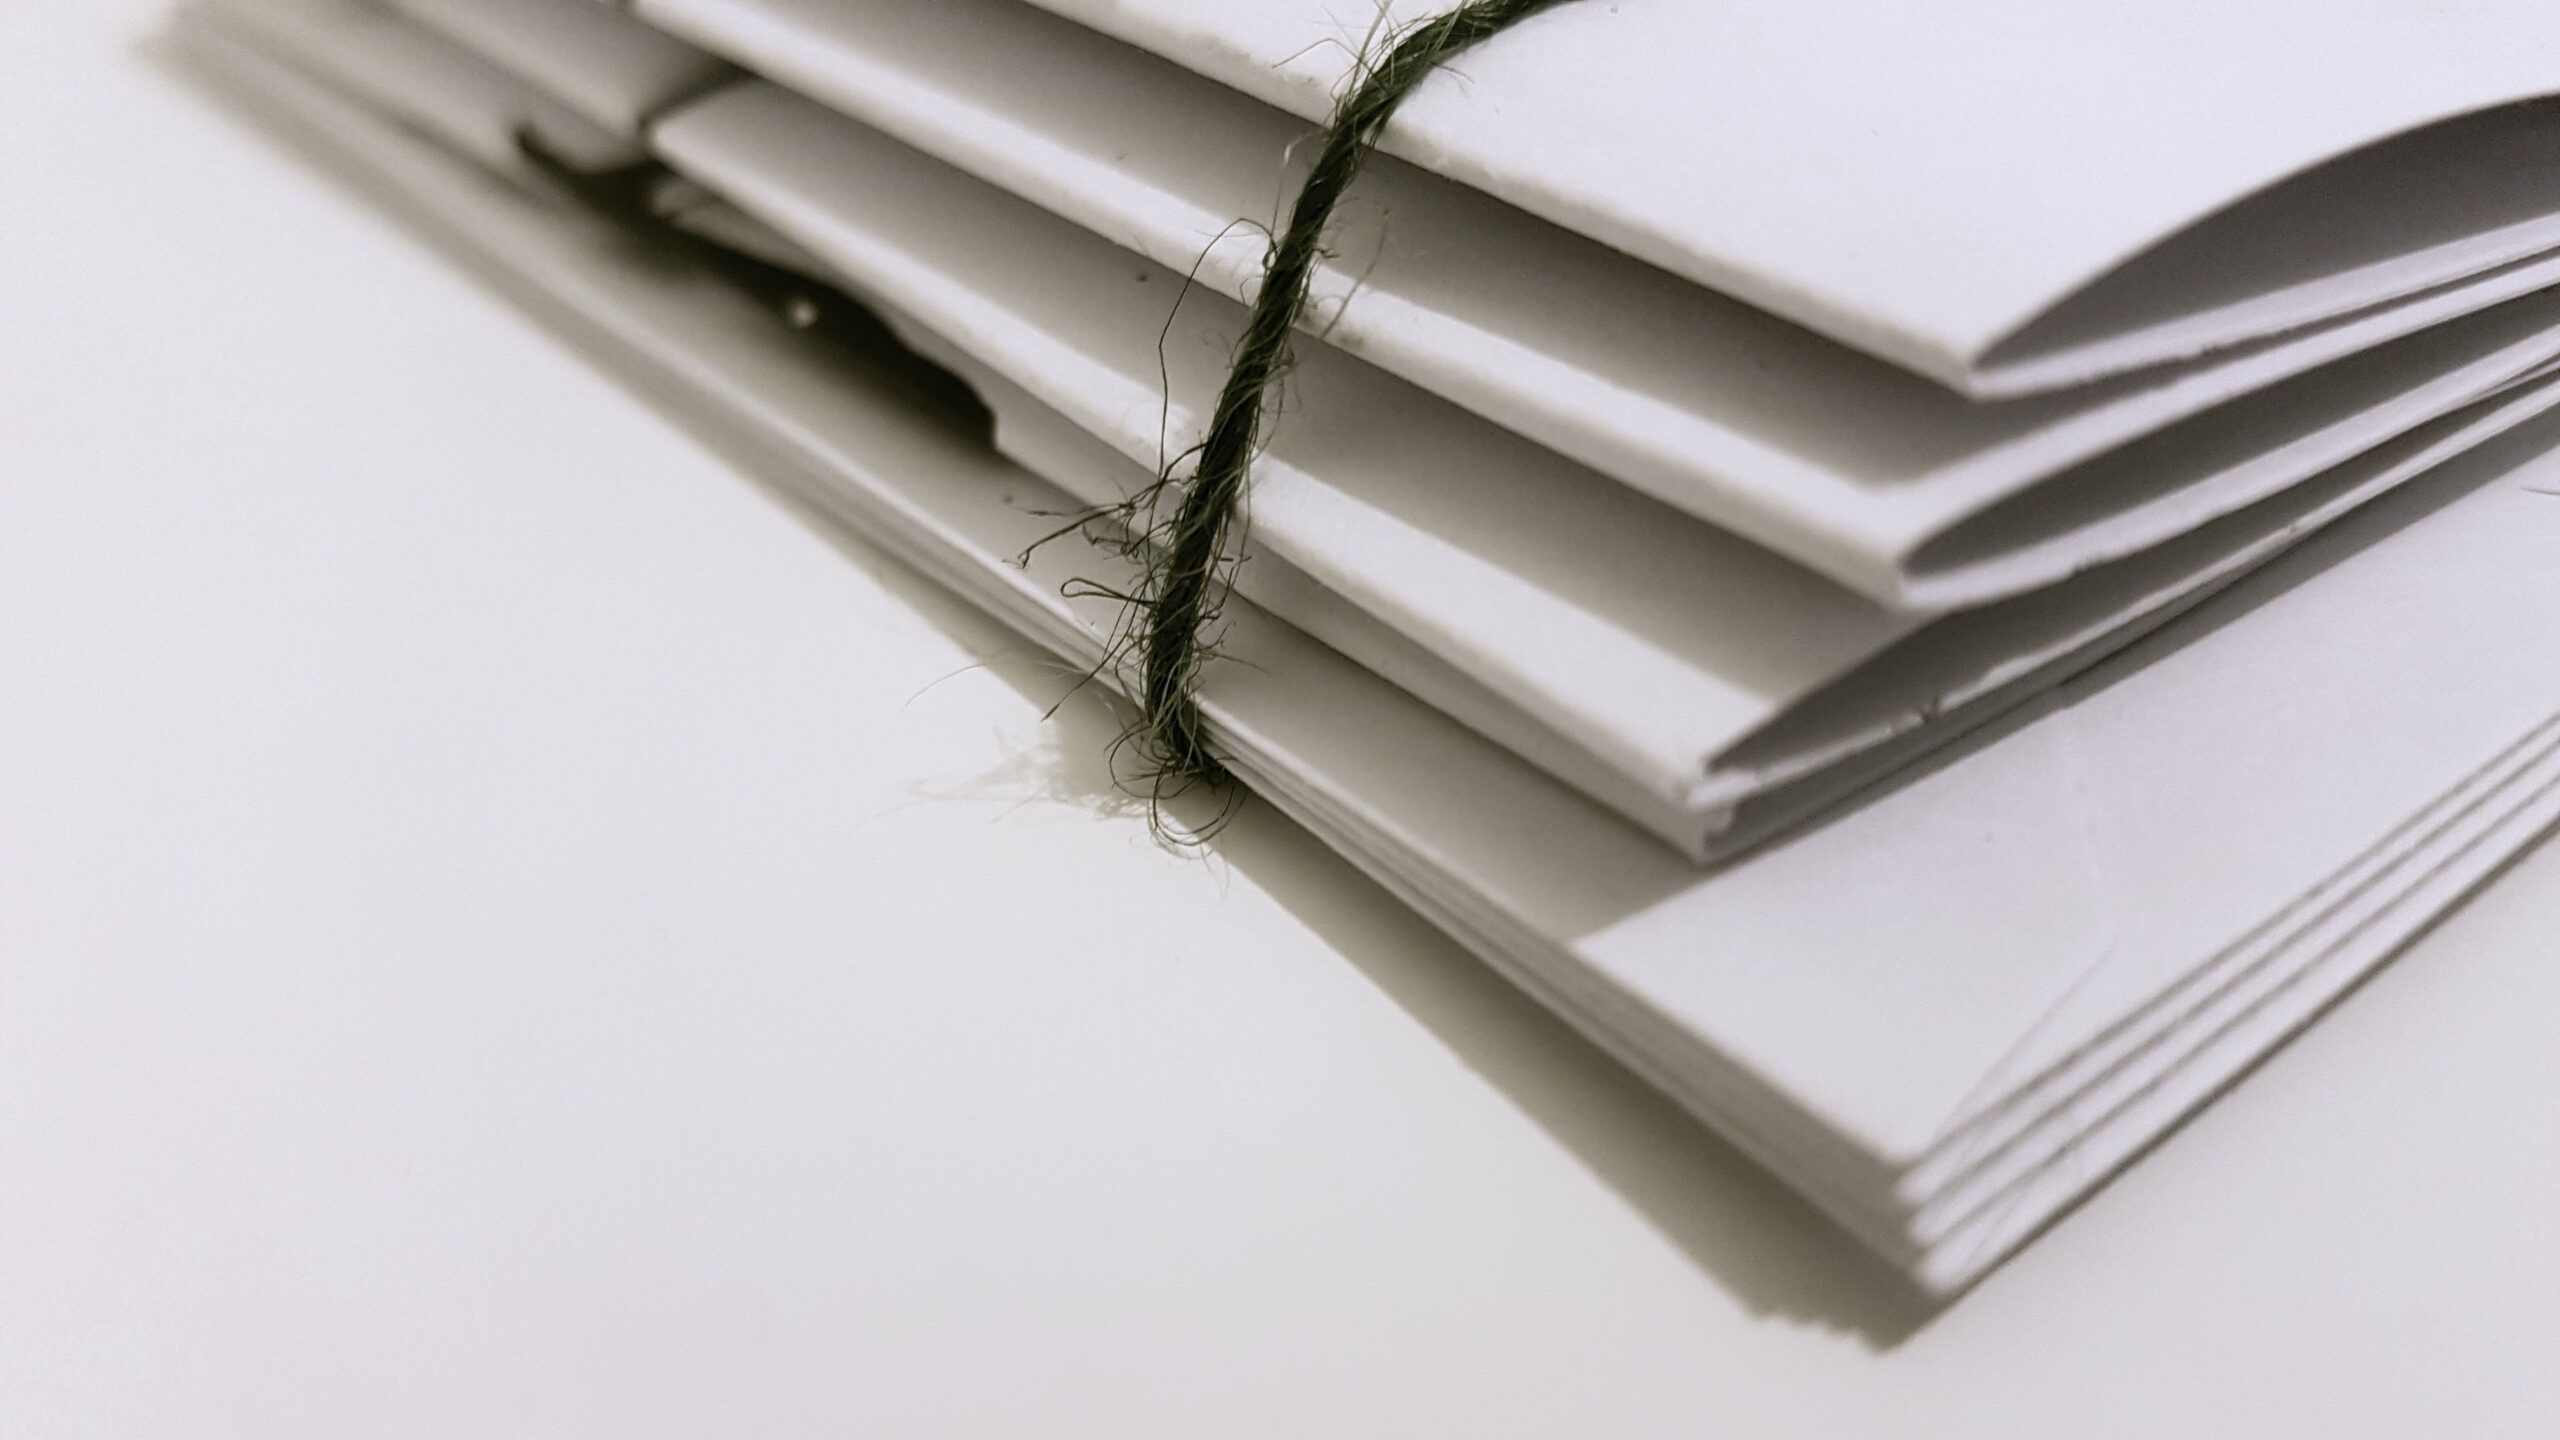 a close-up of a folder on a desk